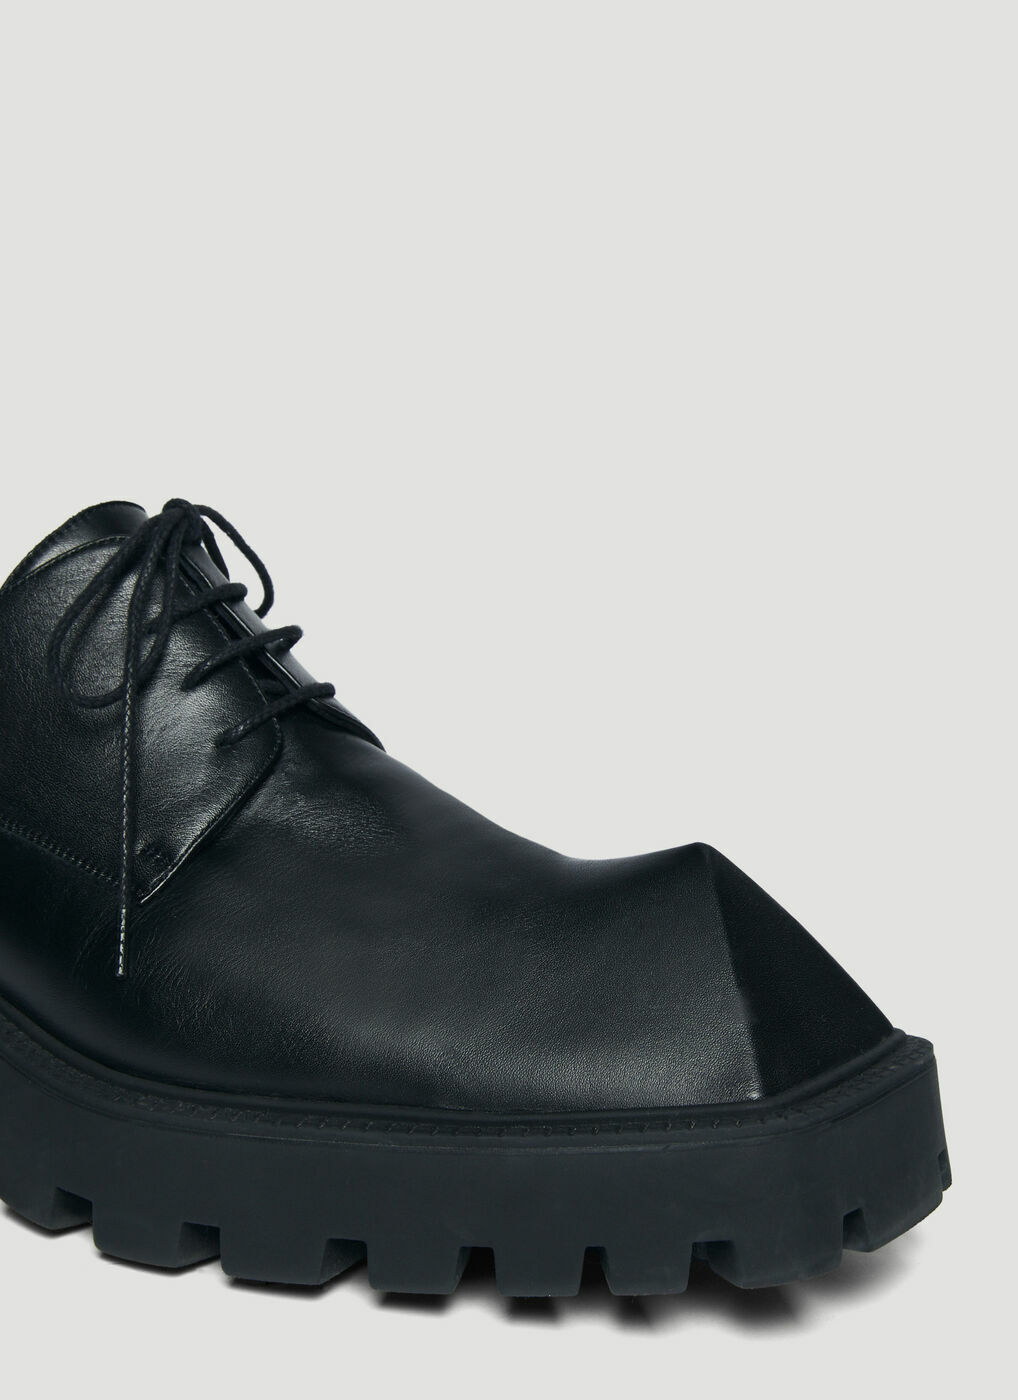 Balenciaga - Rhino Derby Shoes in Black Balenciaga